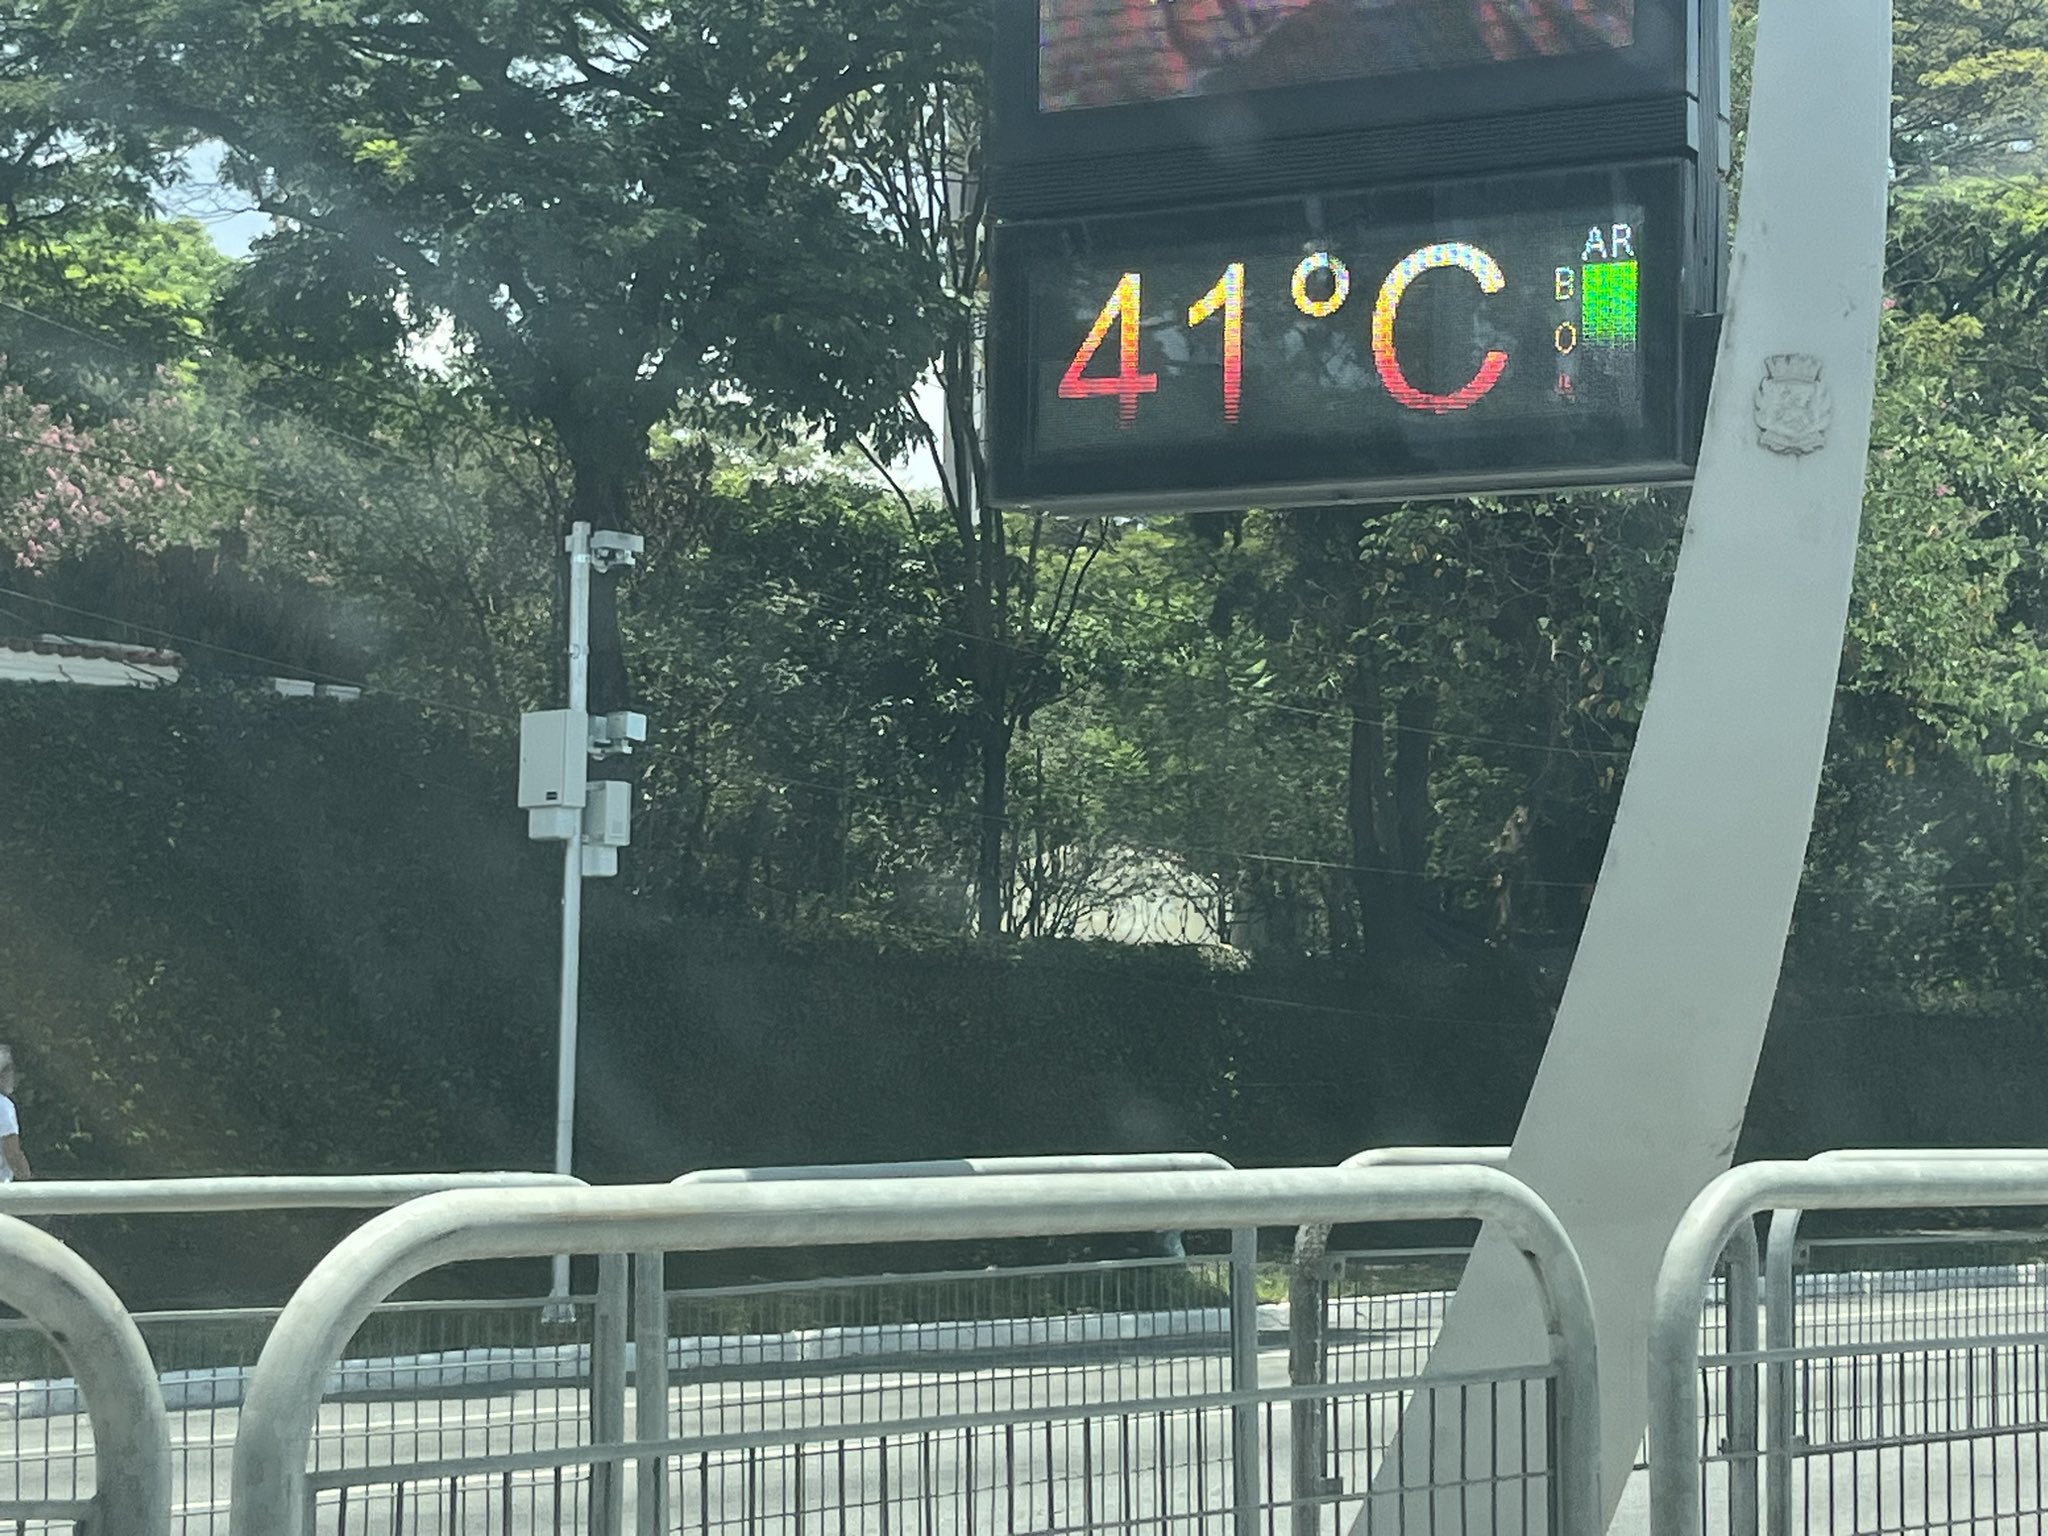 Le Brésil enregistre des températures record dans plusieurs villes en raison de la vague de chaleur